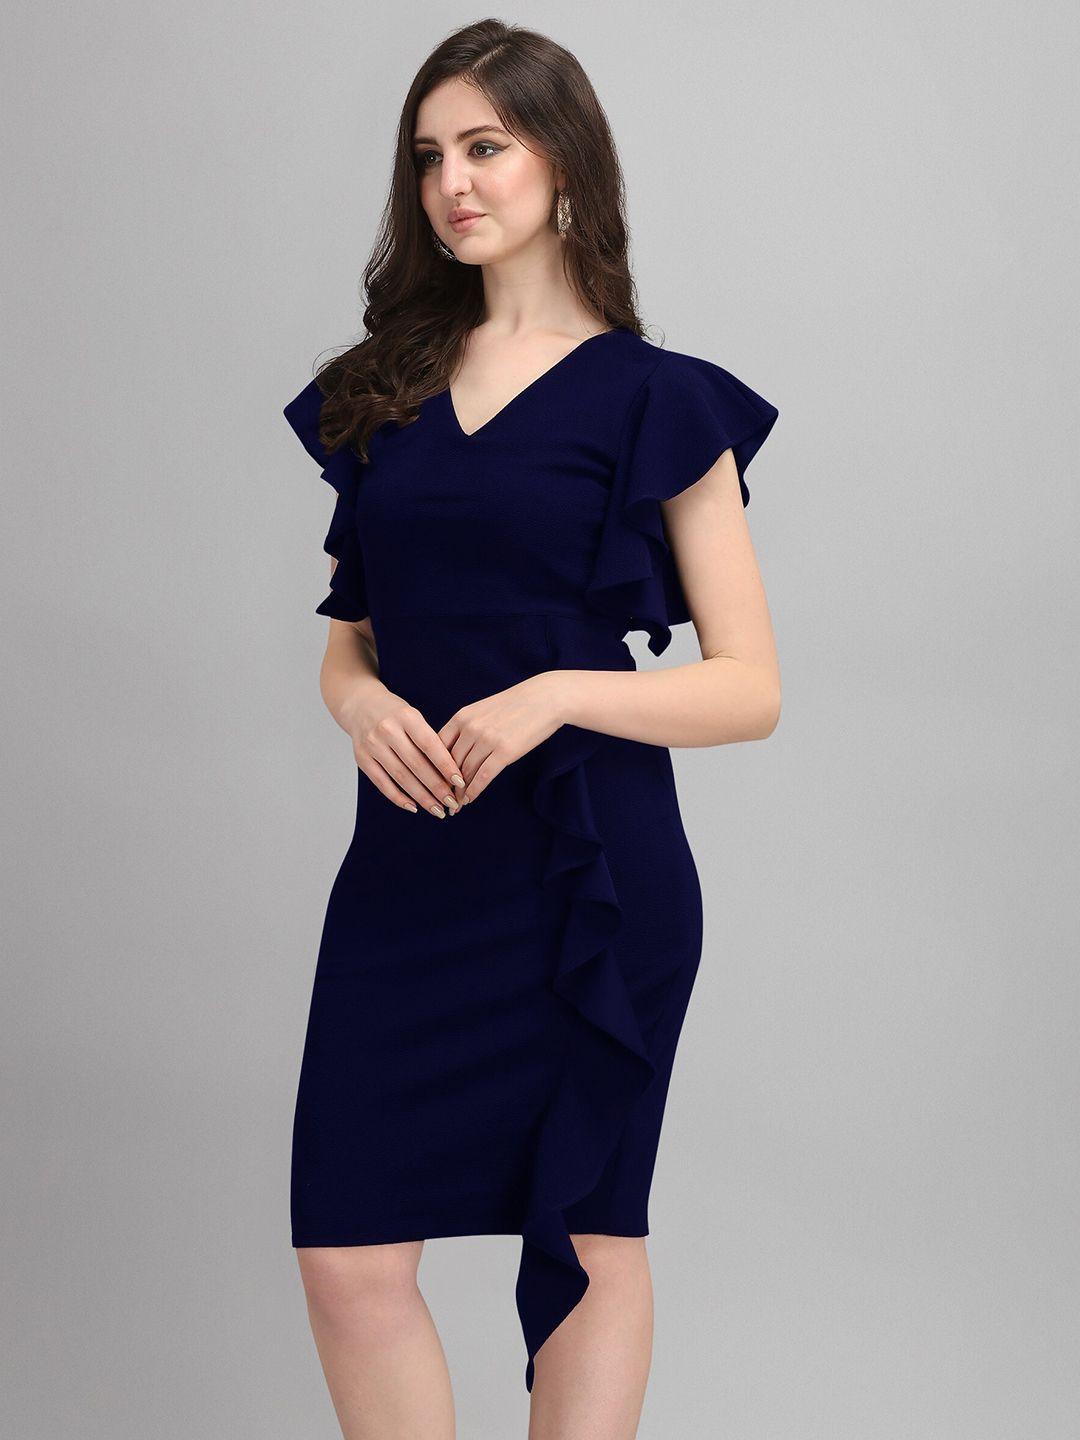 sheetal-associates-blue-formal-a-line-dress